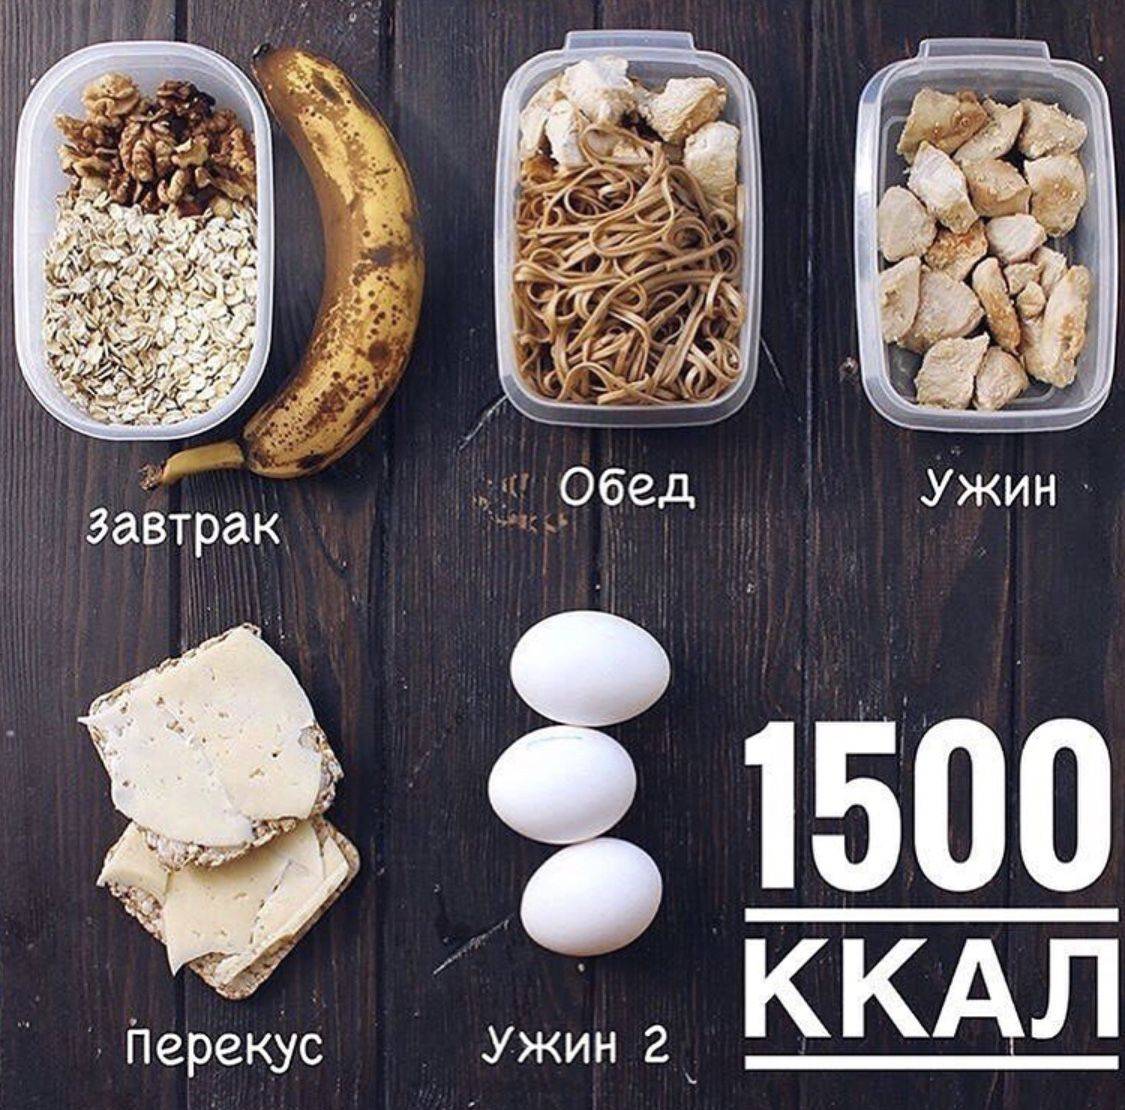 Меню на 1500 ккал в день с рецептами на неделю из простых продуктов: фото пошагово